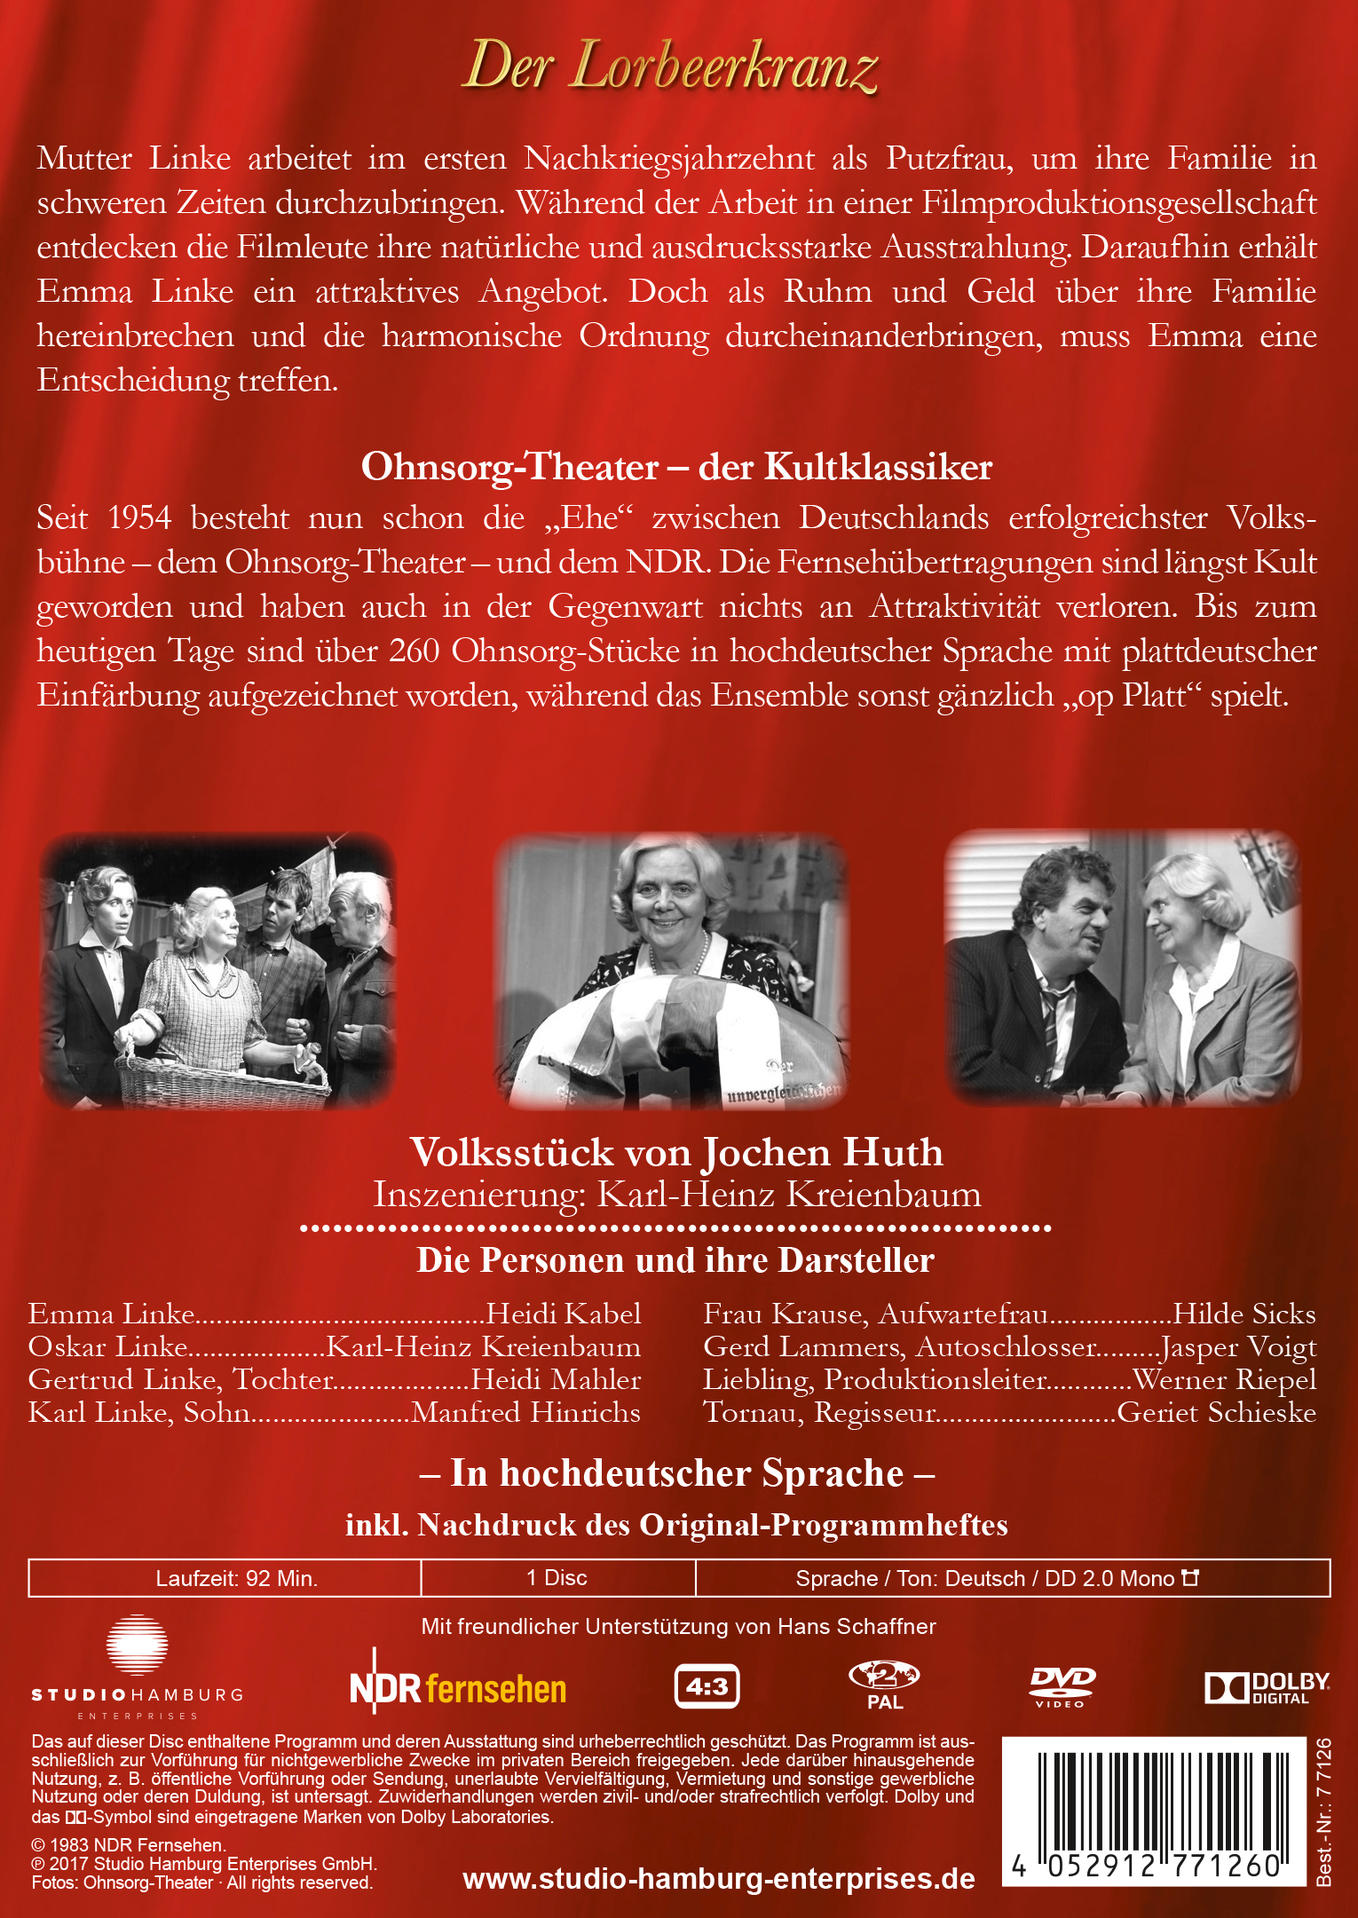 Lorbeerkranz Der Klassiker: DVD Ohnsorg-Theater